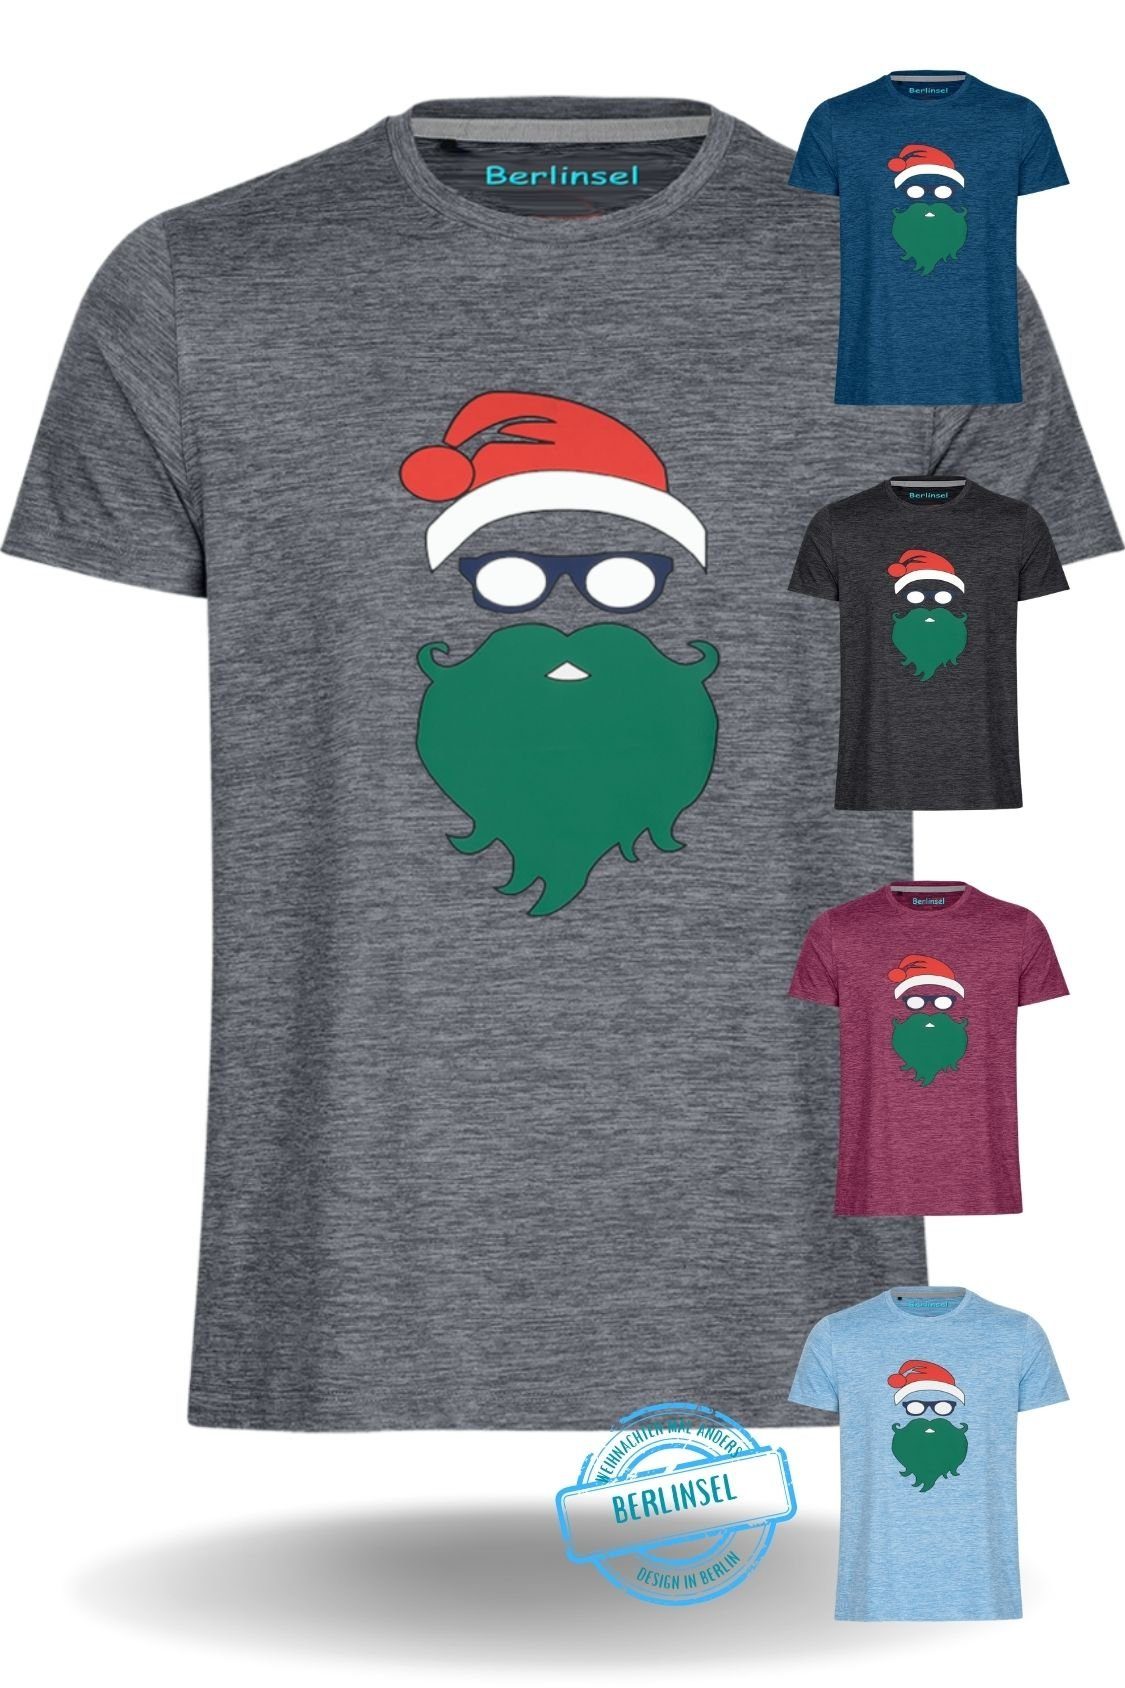 Berlinsel T-Shirt Printshirt Weihnachtsshirt Männer Weihnachtsoutfit Herren Weihnachtsfeier, Weihnachtsgeschenk, Weihnachtsfoto grau